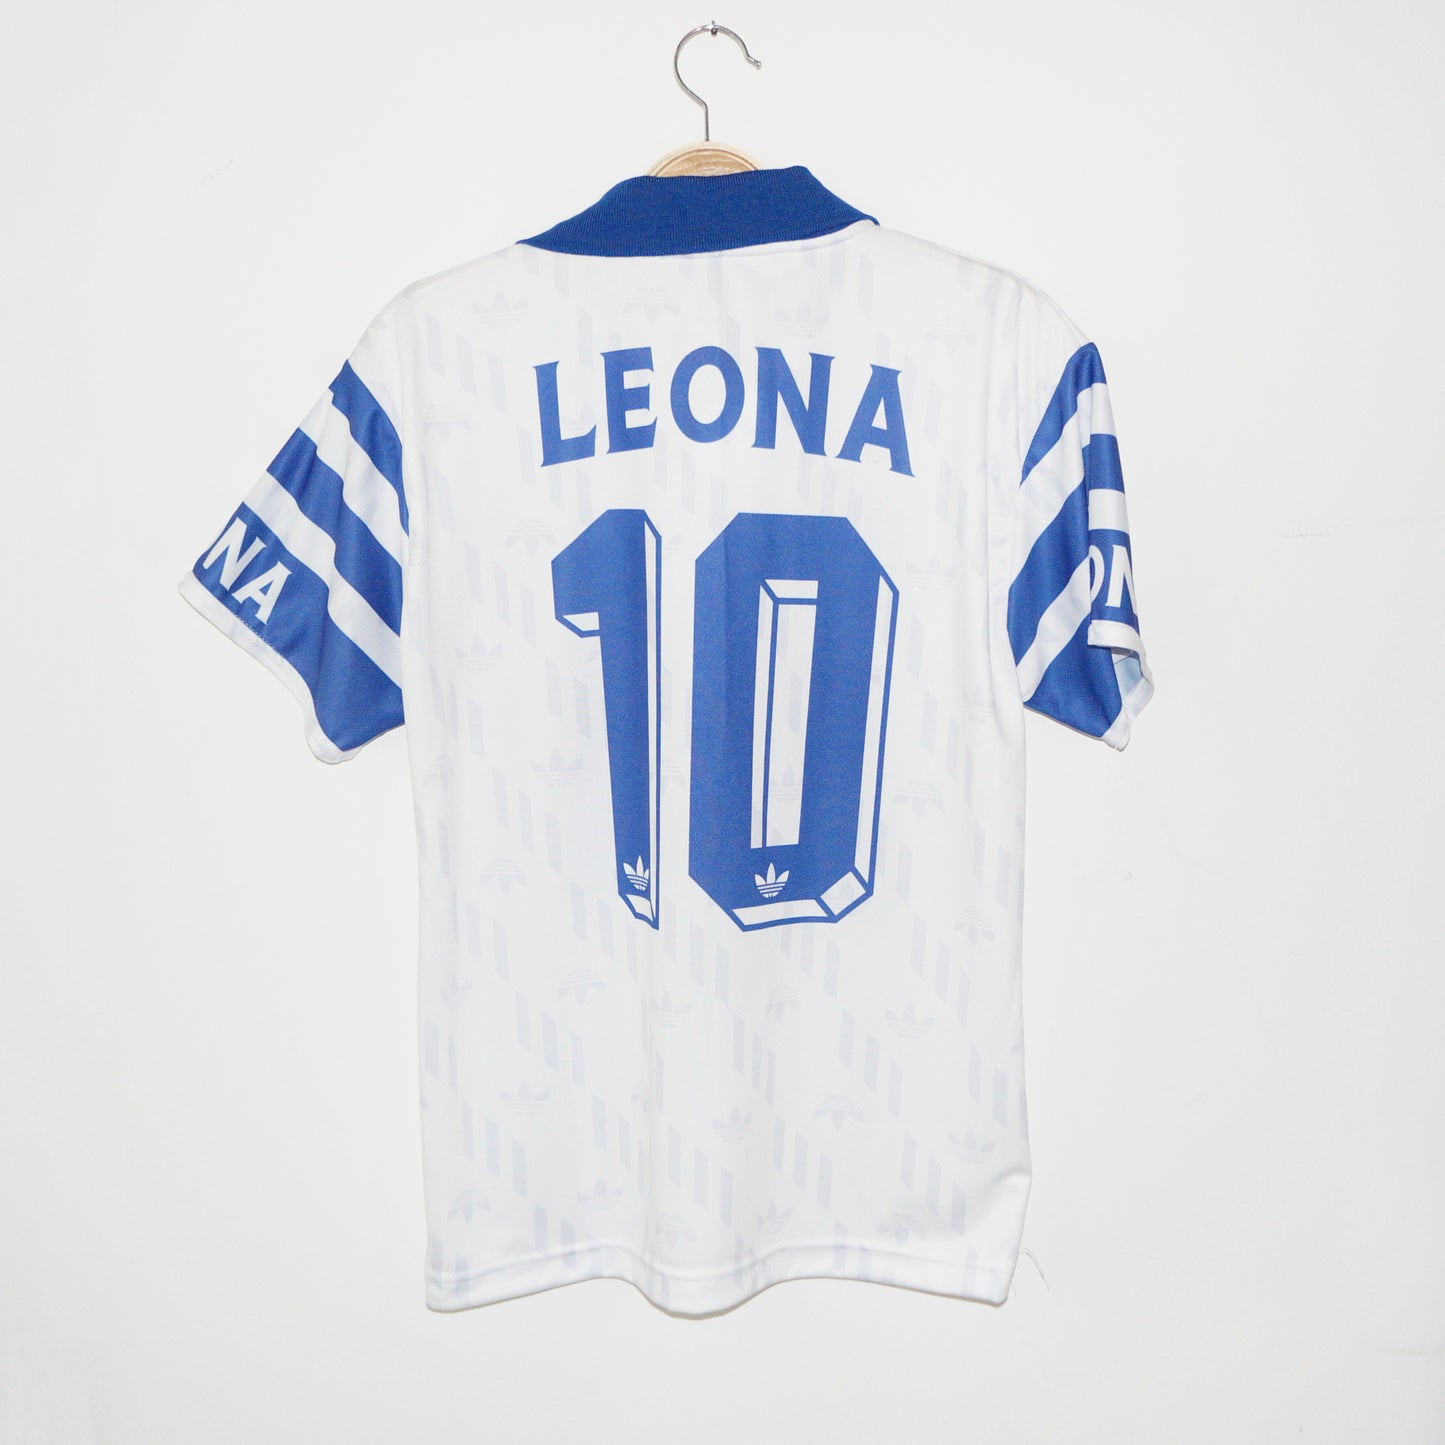 Millionaires Leona 1996 WHITE T-shirt